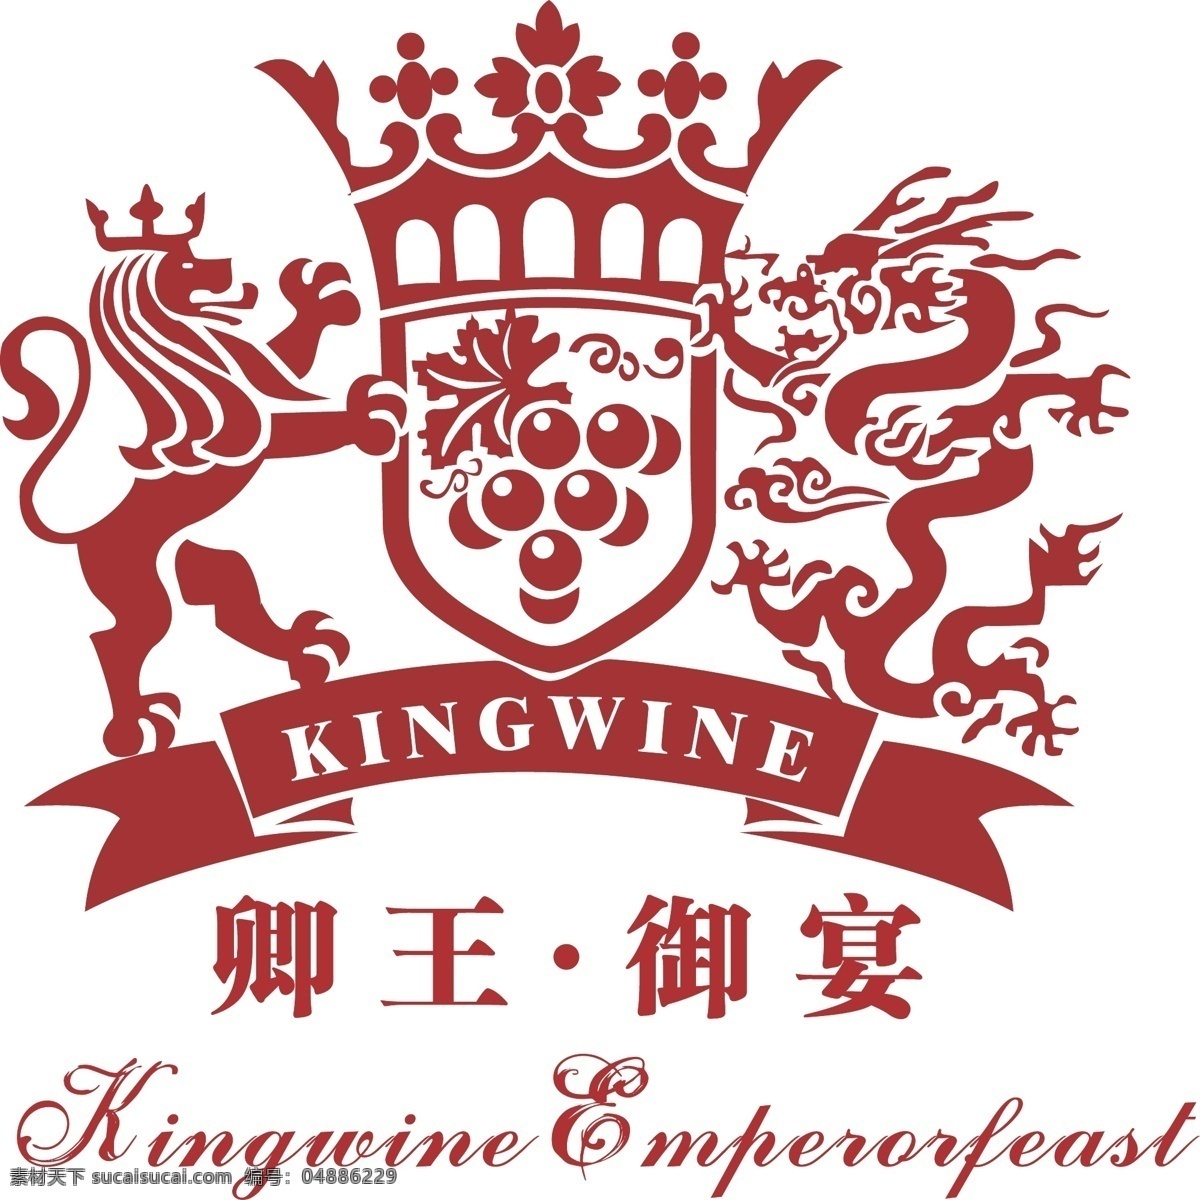 卿王御宴标志 卿王标志 御宴标志 狮子标志 龙标志 葡萄标志 葡萄酒标志 酒标 vi 标志 红色标志 英式标志 kingwine 酒行业标志 logo设计